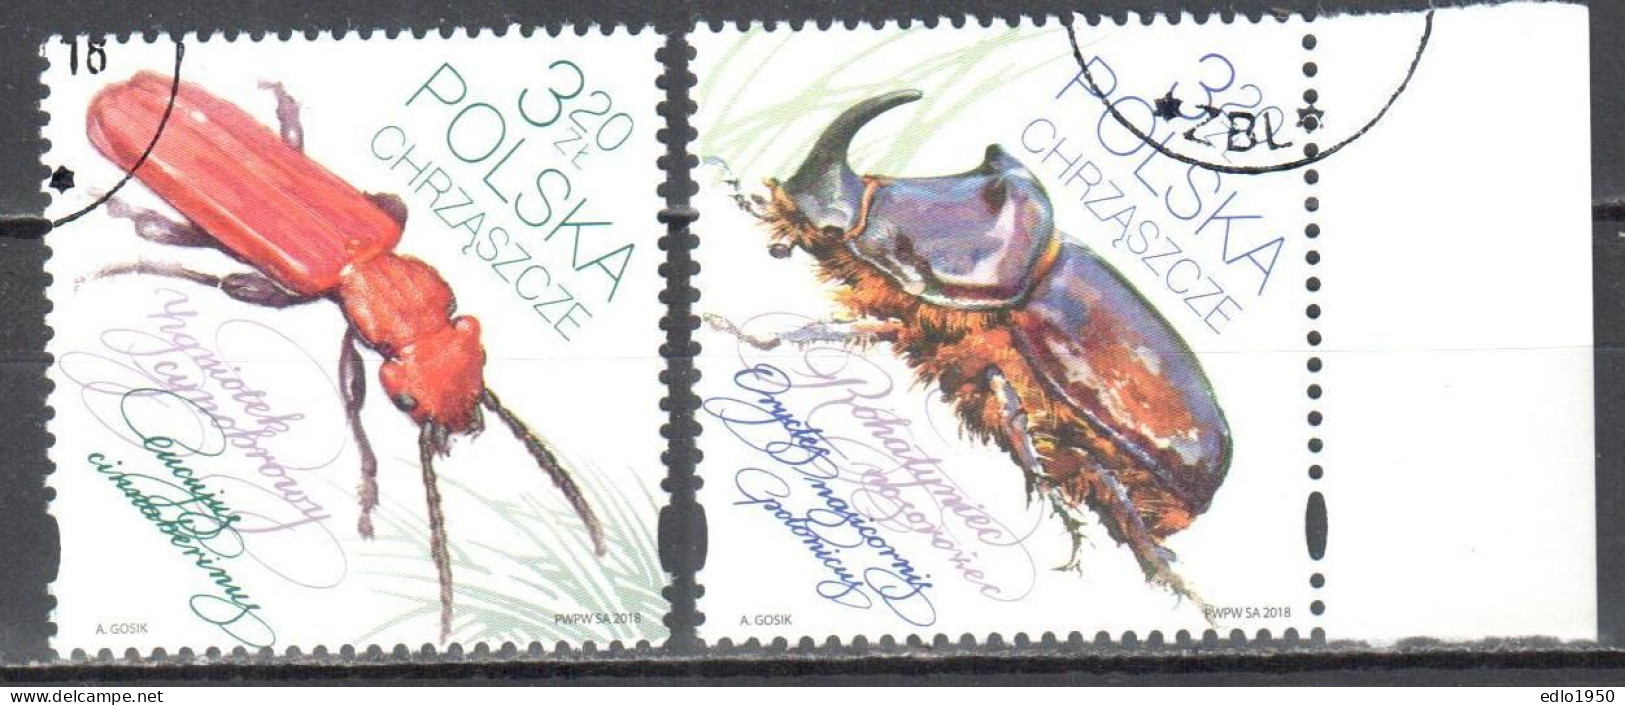 Poland 2018 - Beetles - Mi.5019-20 - Used - Usati